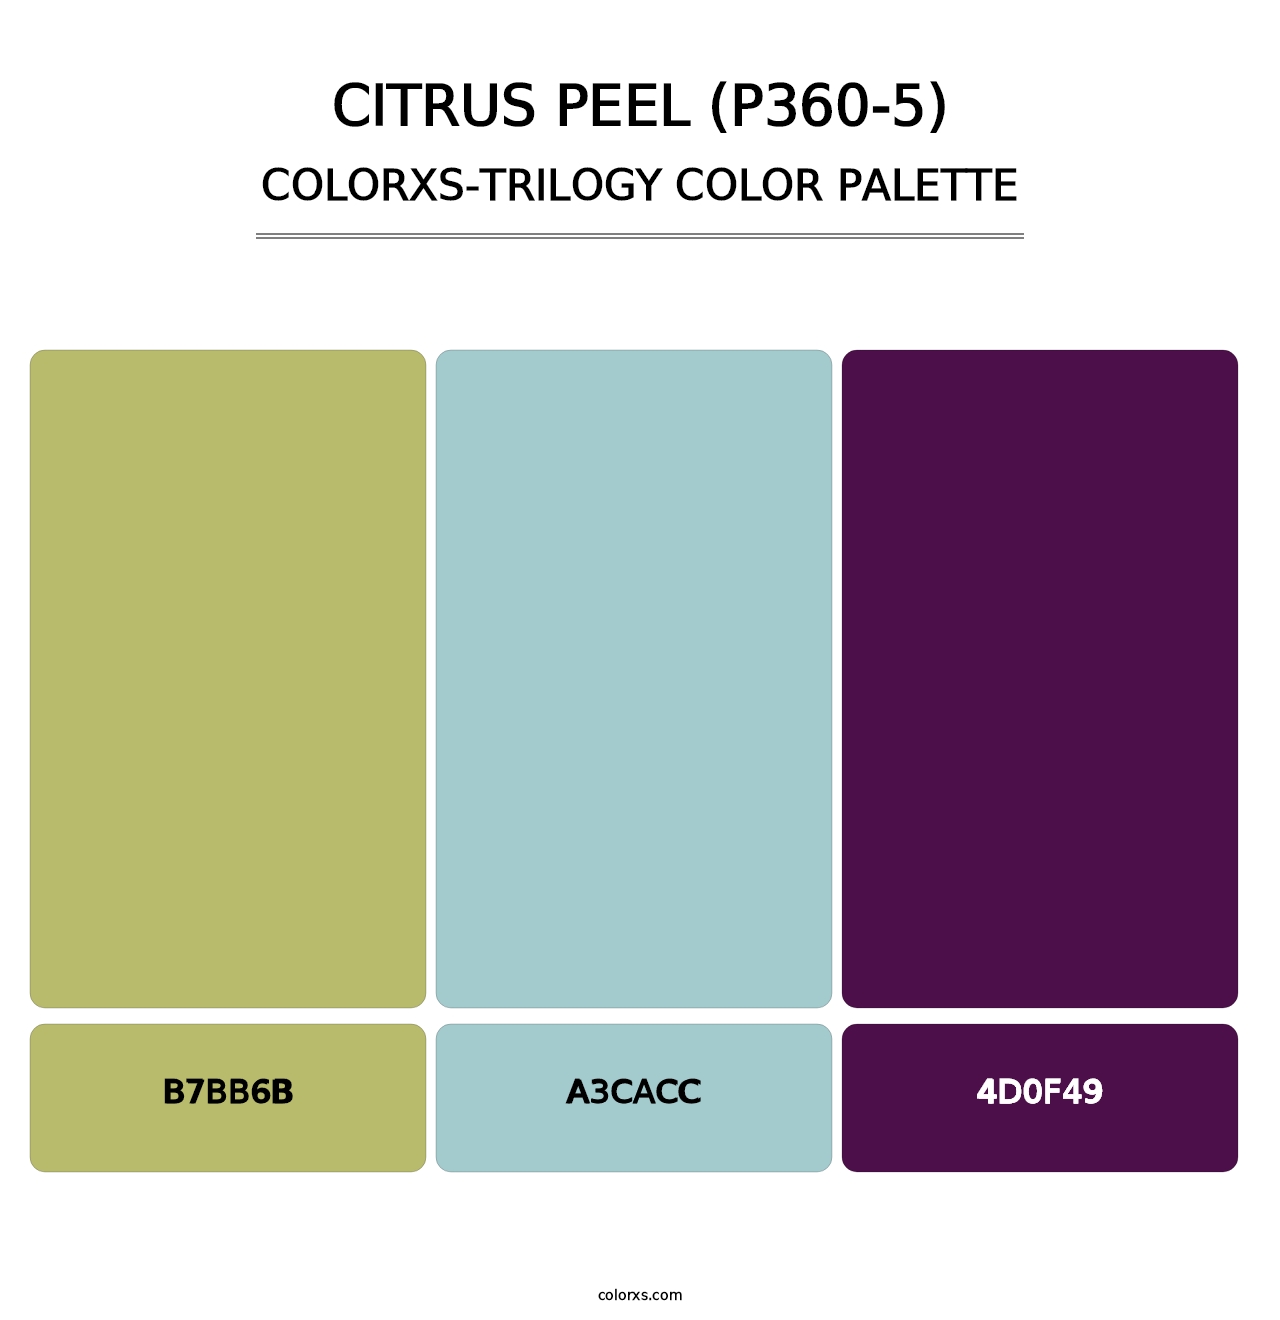 Citrus Peel (P360-5) - Colorxs Trilogy Palette